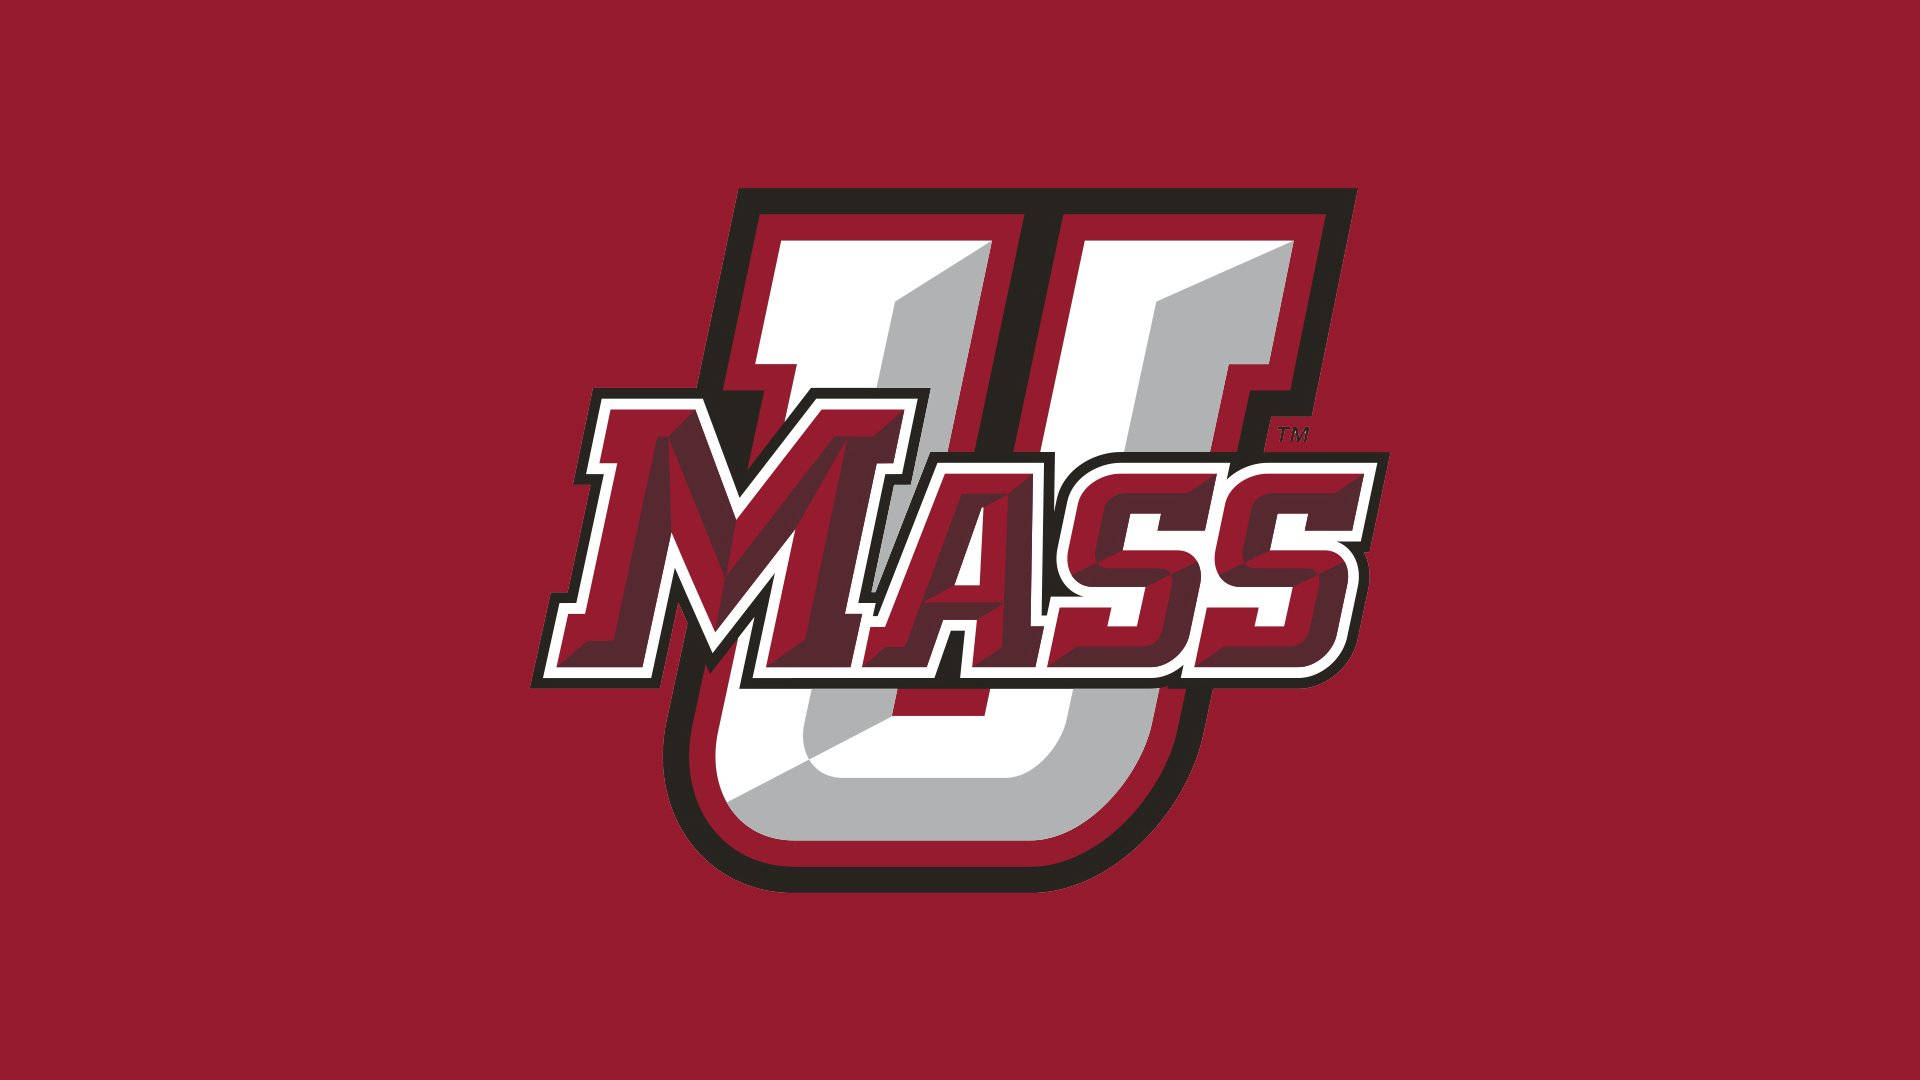 Logosimplificado En Plata De La Universidad De Massachusetts. Fondo de pantalla